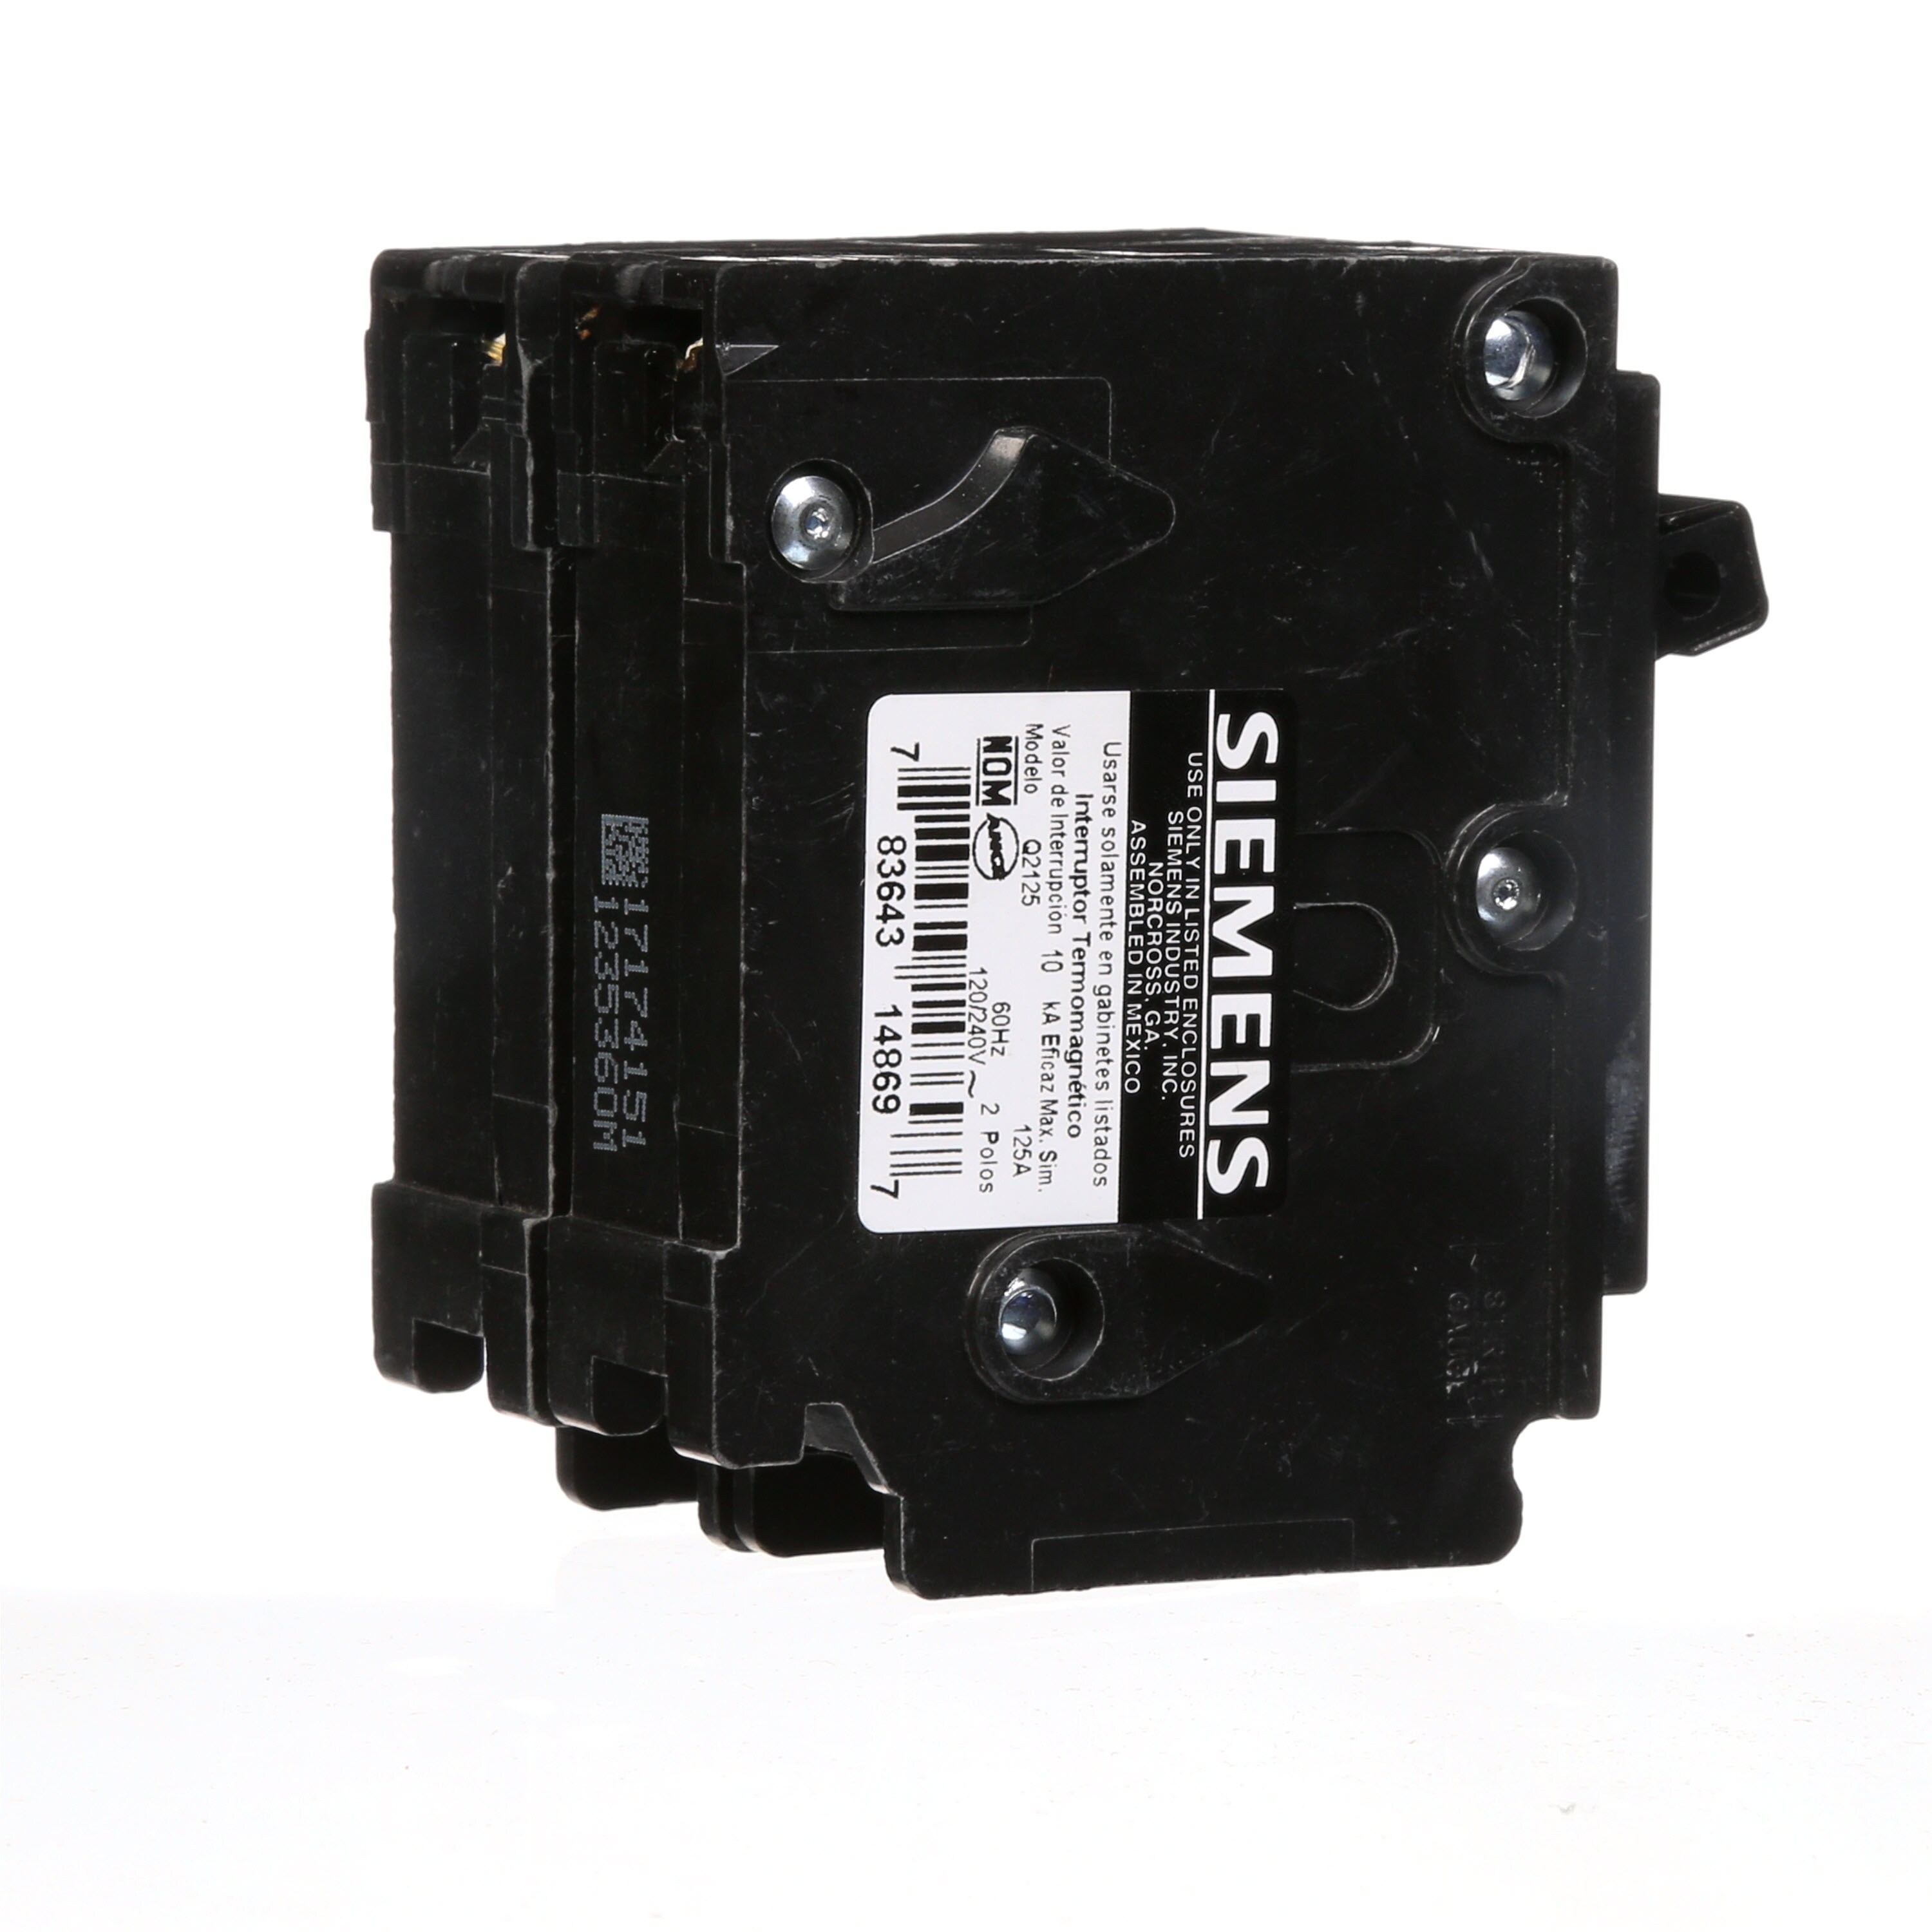 Siemens Q2125P 125 Amp Double-pole Type QP Circuit Breaker Black for sale online